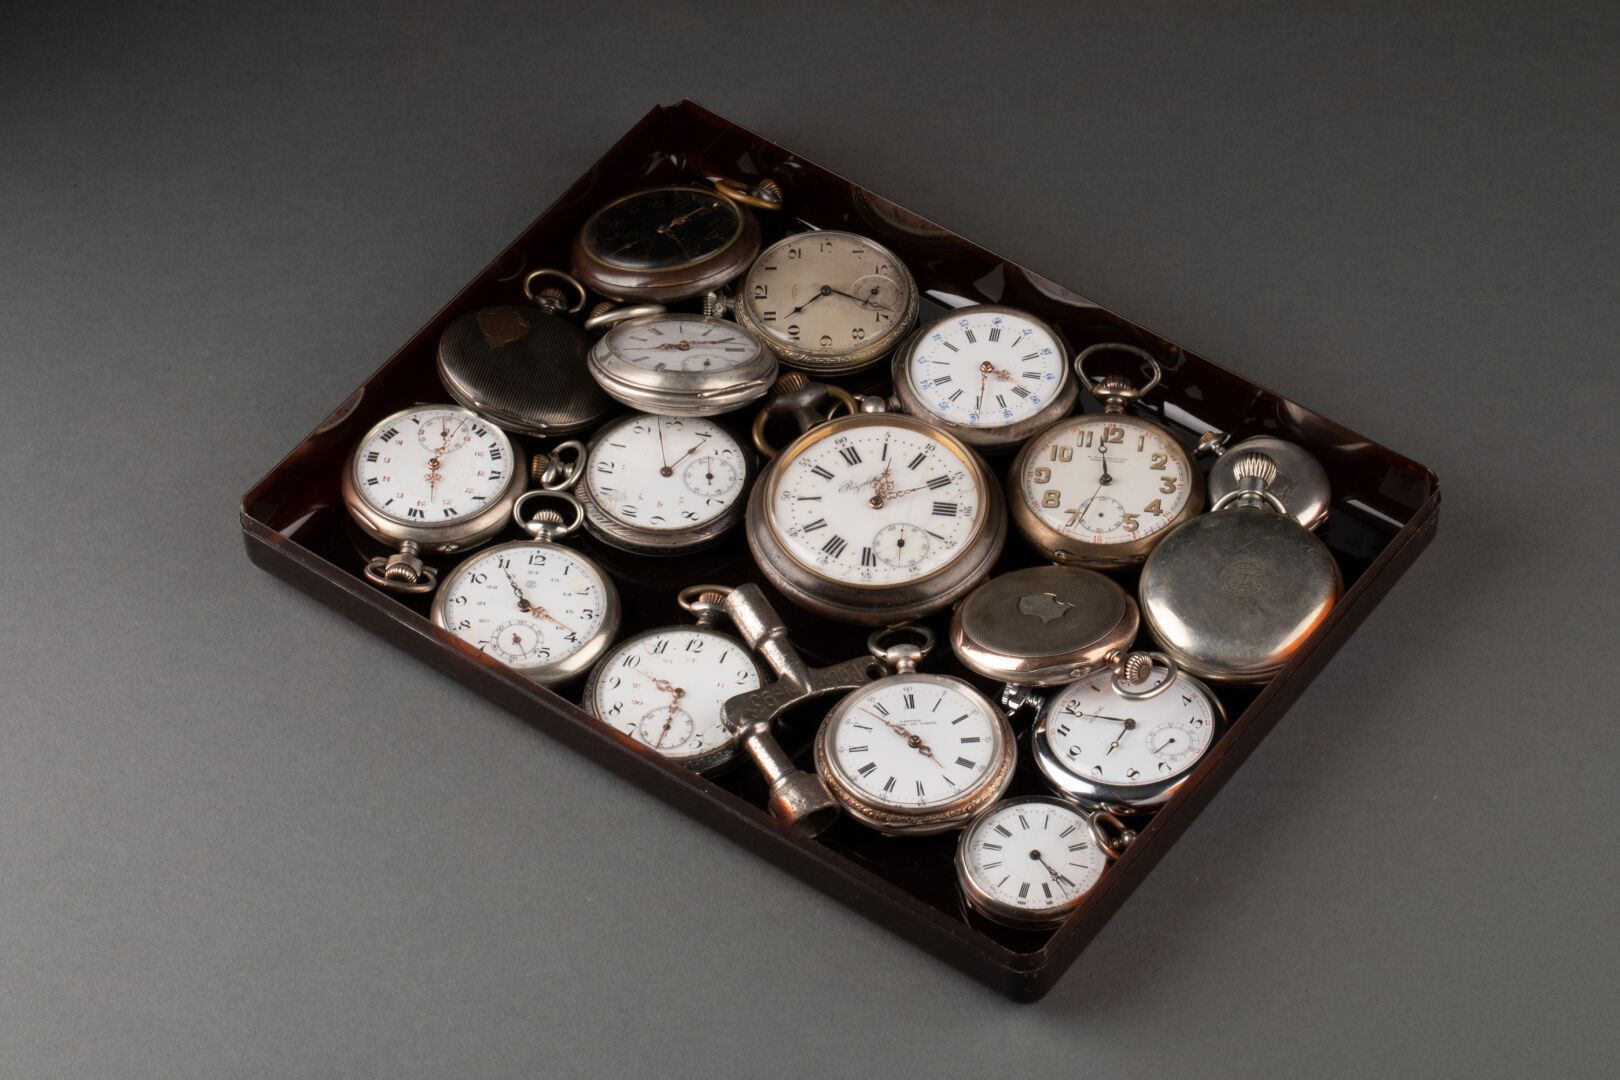 [MONTRES de GOUSSET] 收集怀表、领表和一个调节器（共17个）。

银色和镀银金属